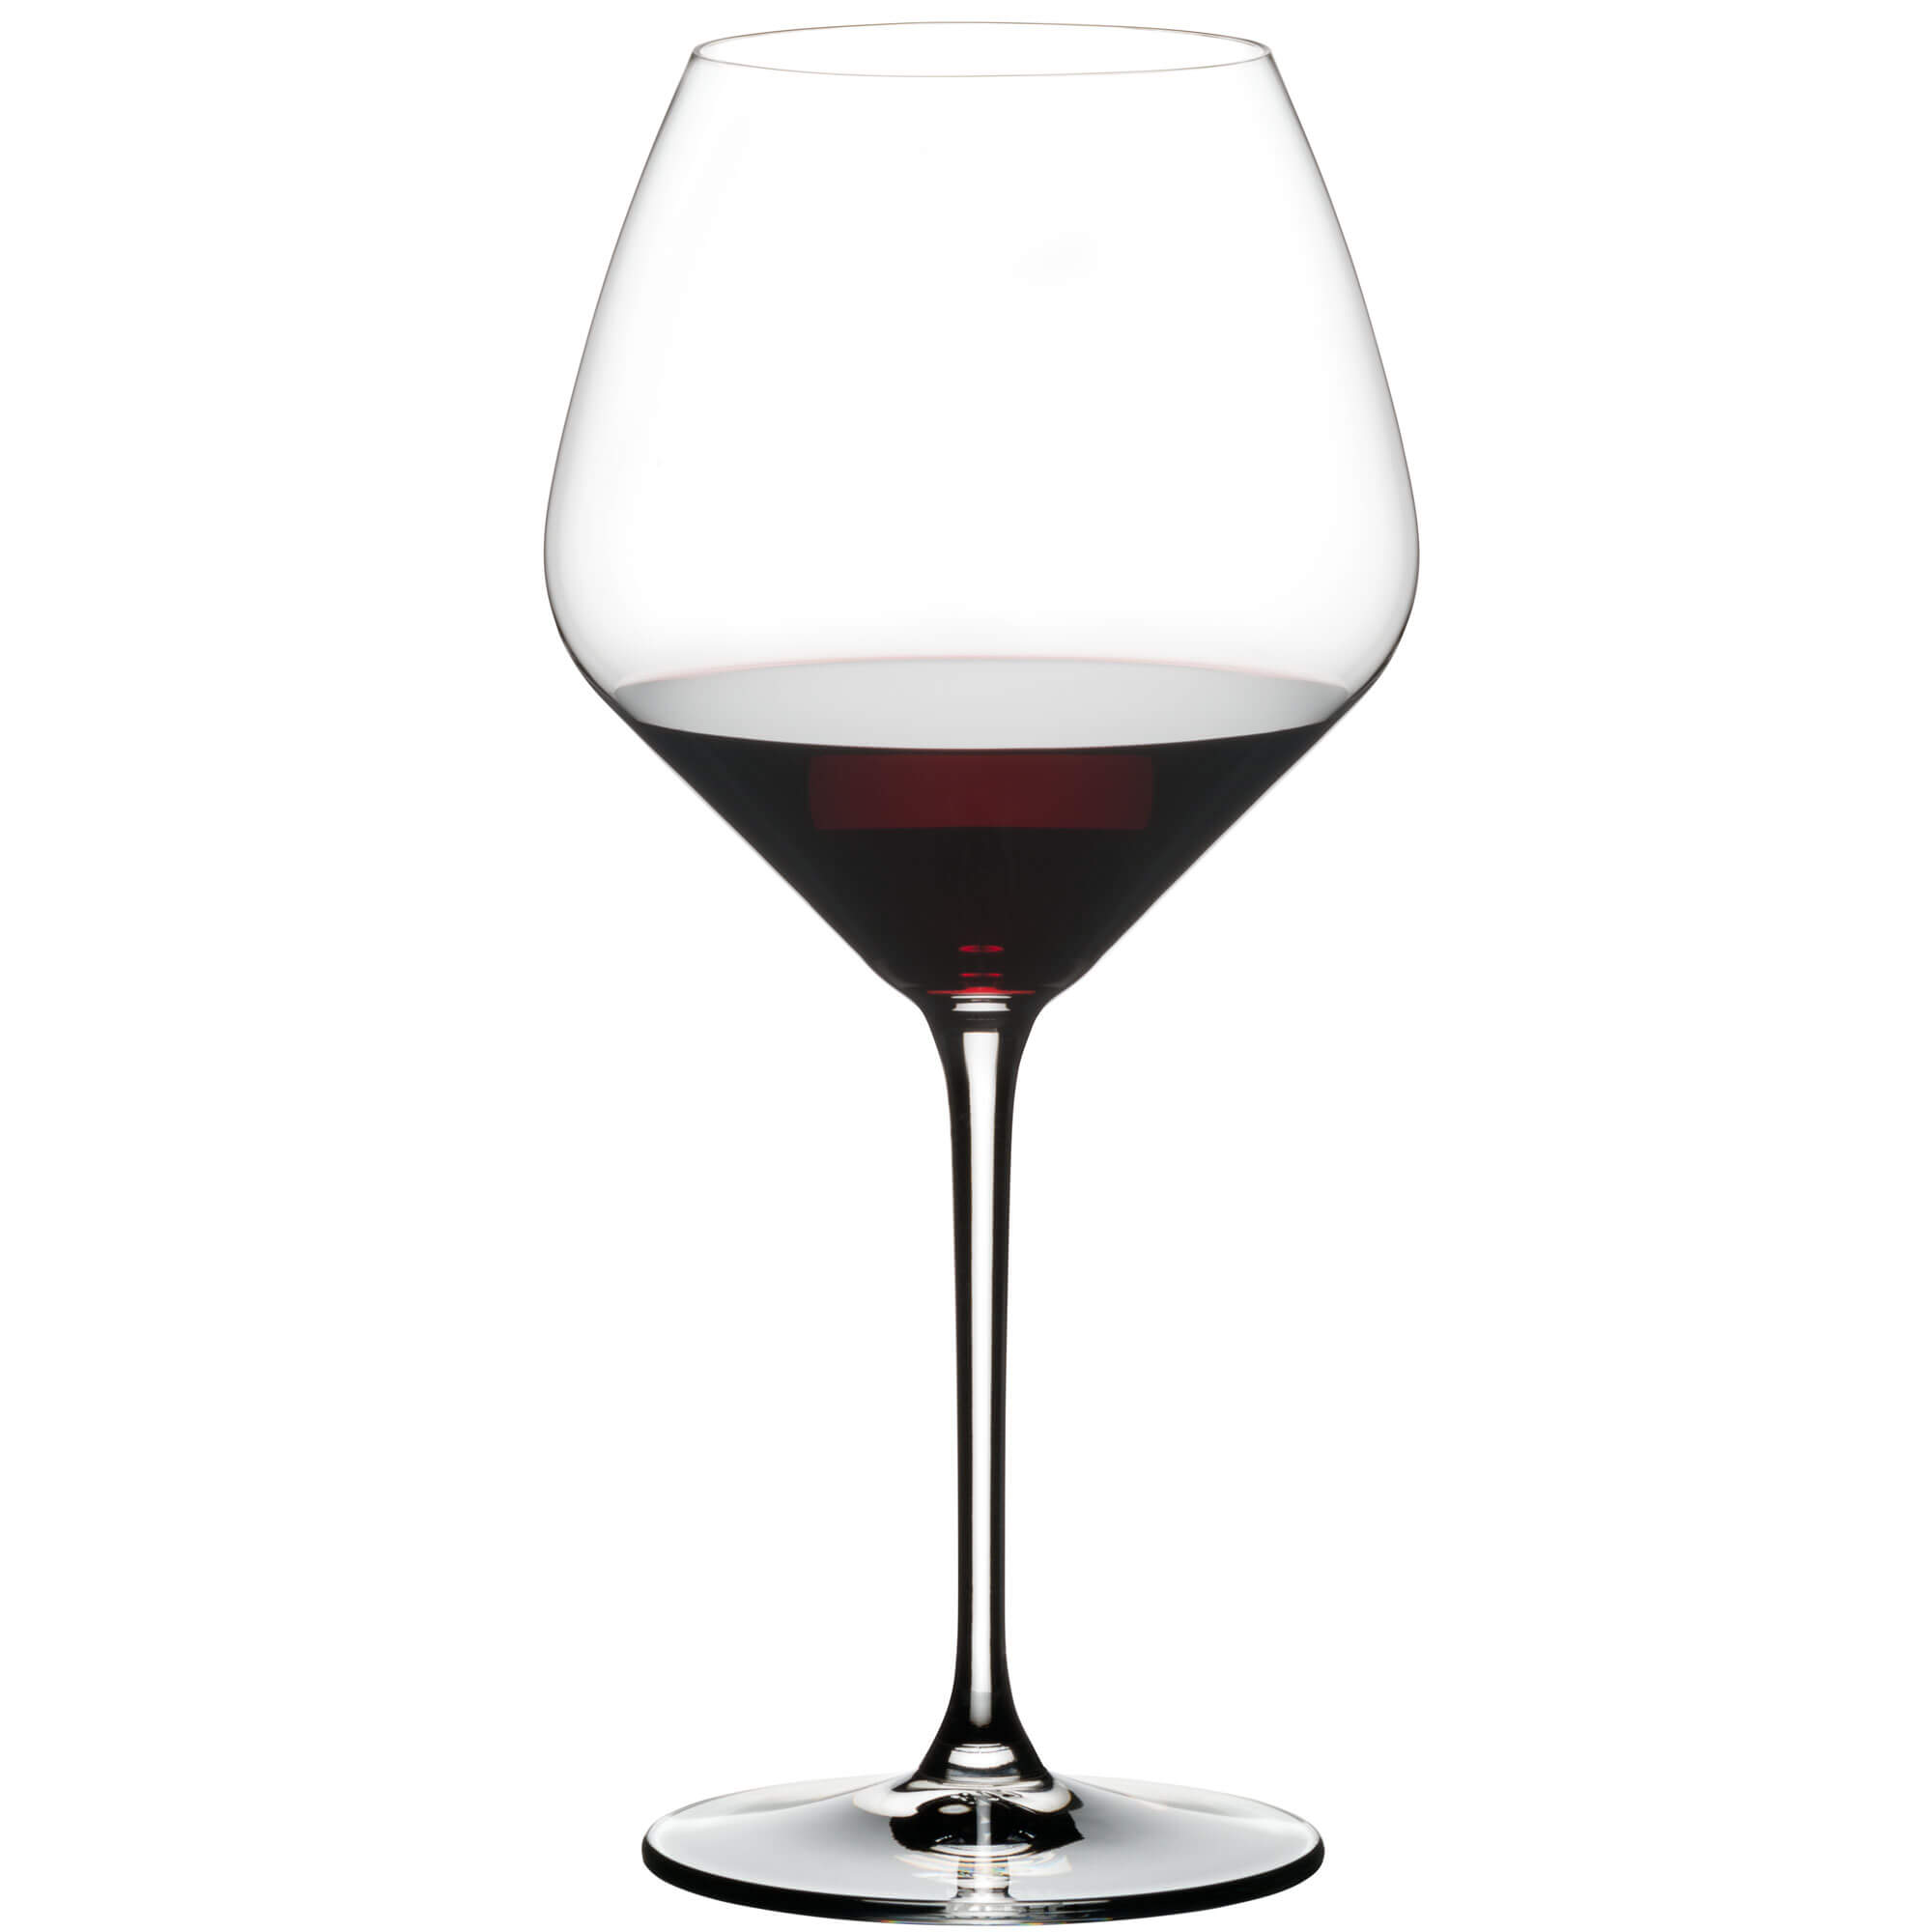 Pinot Noir glass Heart to Heart, Riedel - 770ml (2 pcs.)